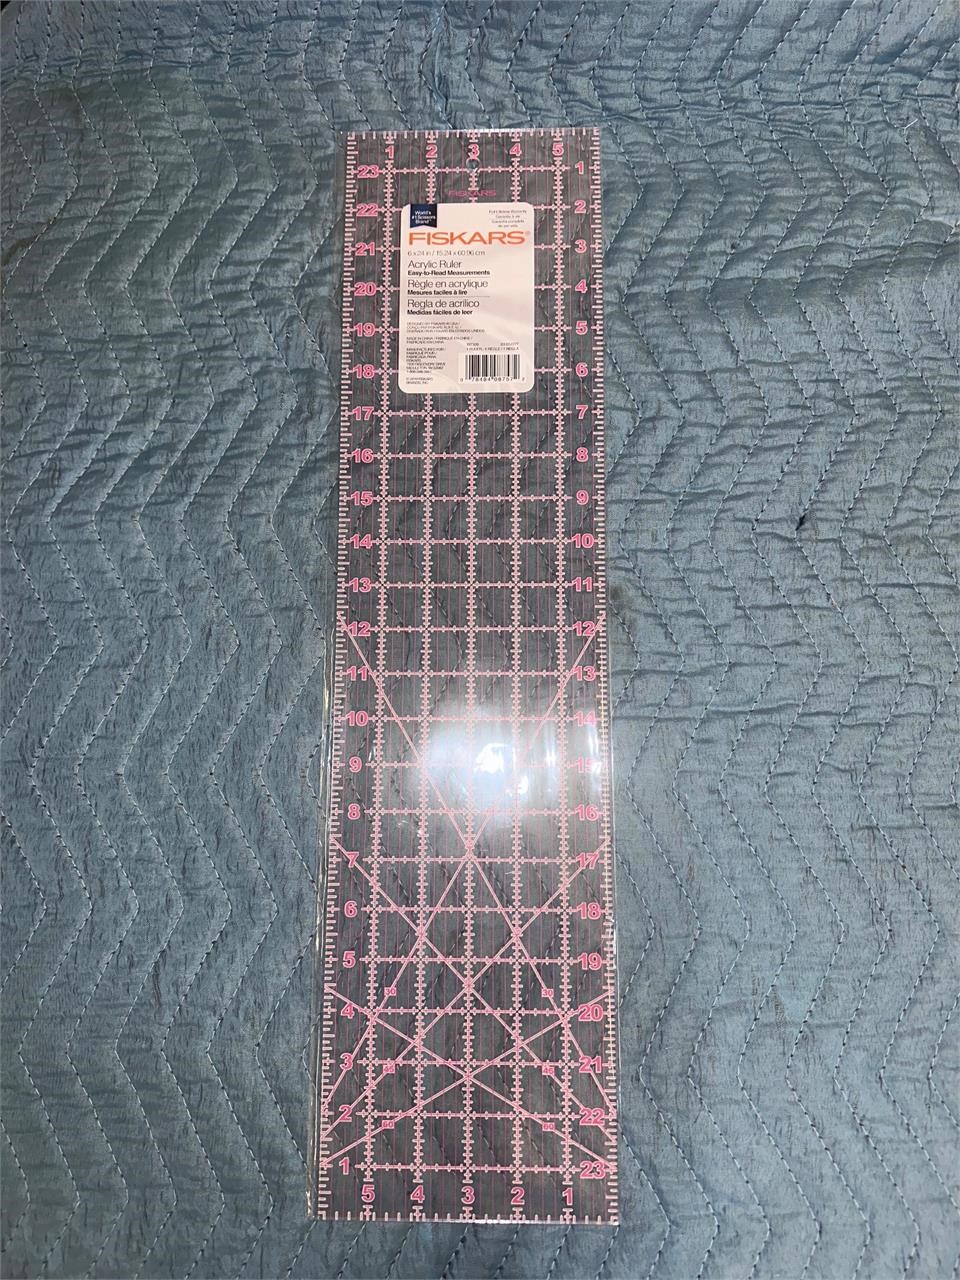 Fiskars Sewing Ruler - 6" x 24" Acrylic Ruler